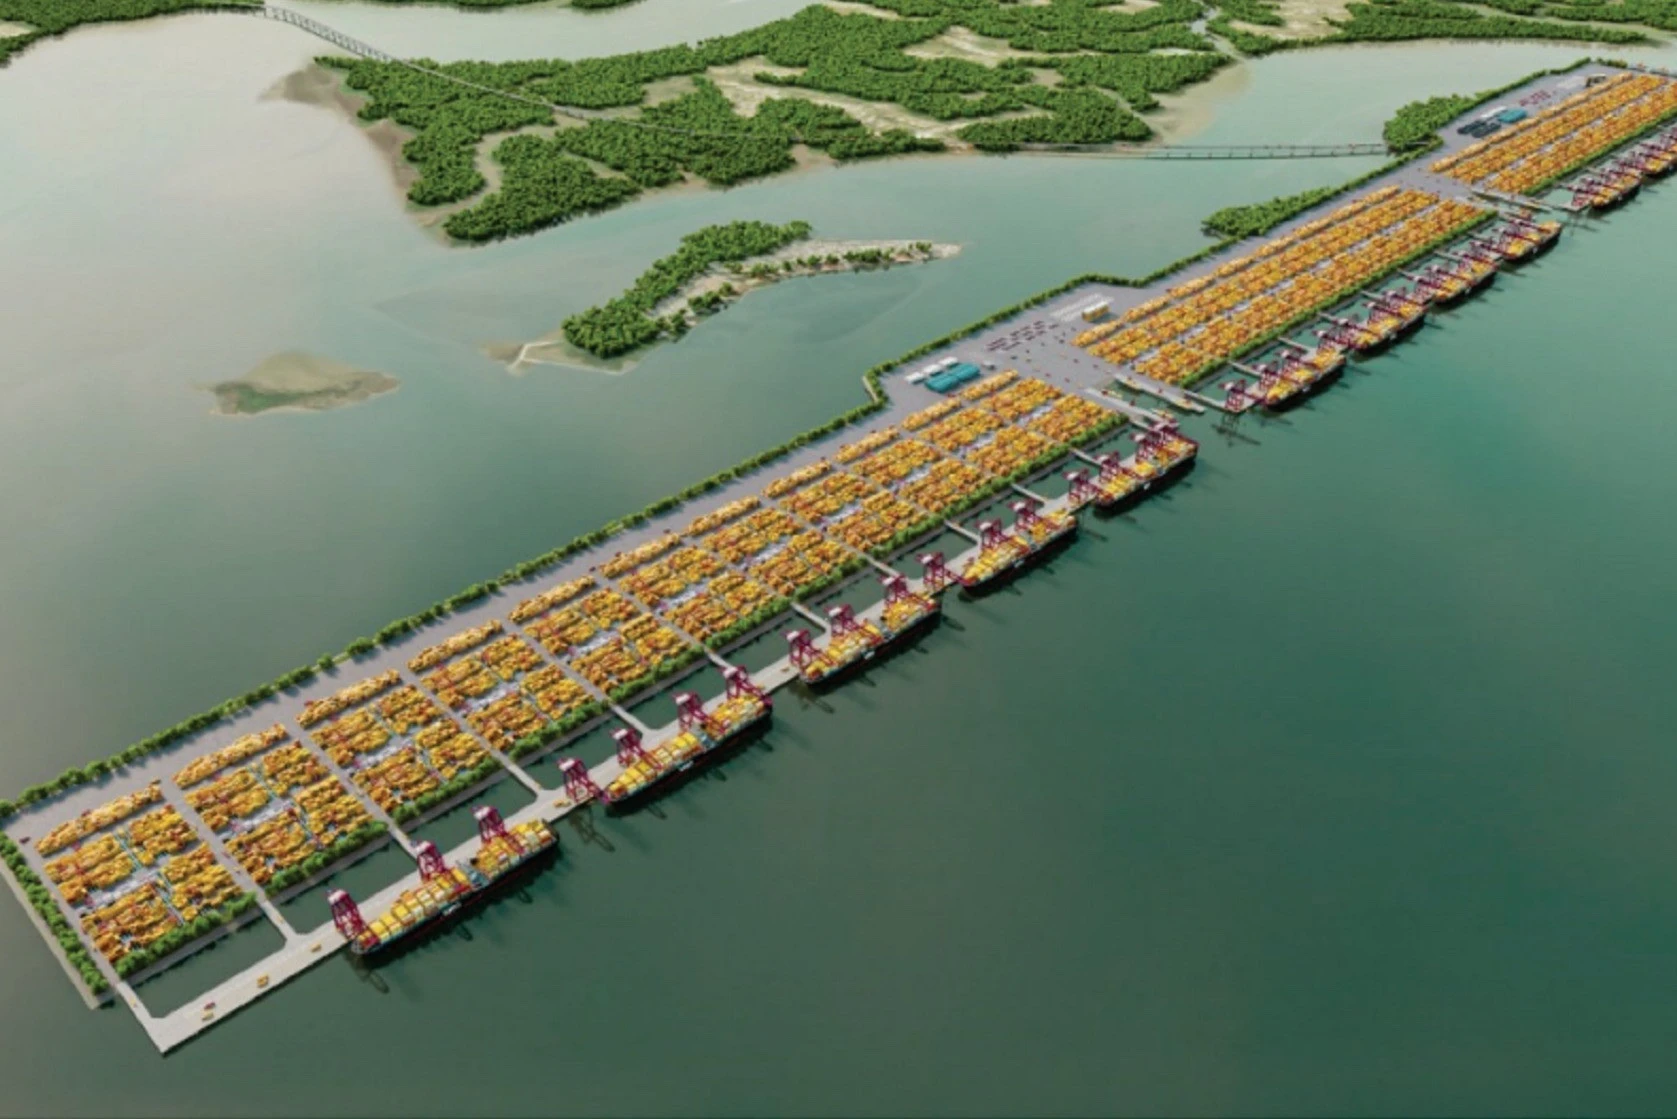 Siêu cảng Cần Giờ, một trong những dự án trọng điểm, giúp thành phố phát triển kinh tế hướng biển. Ảnh: Sở GTVT TP.HCM 